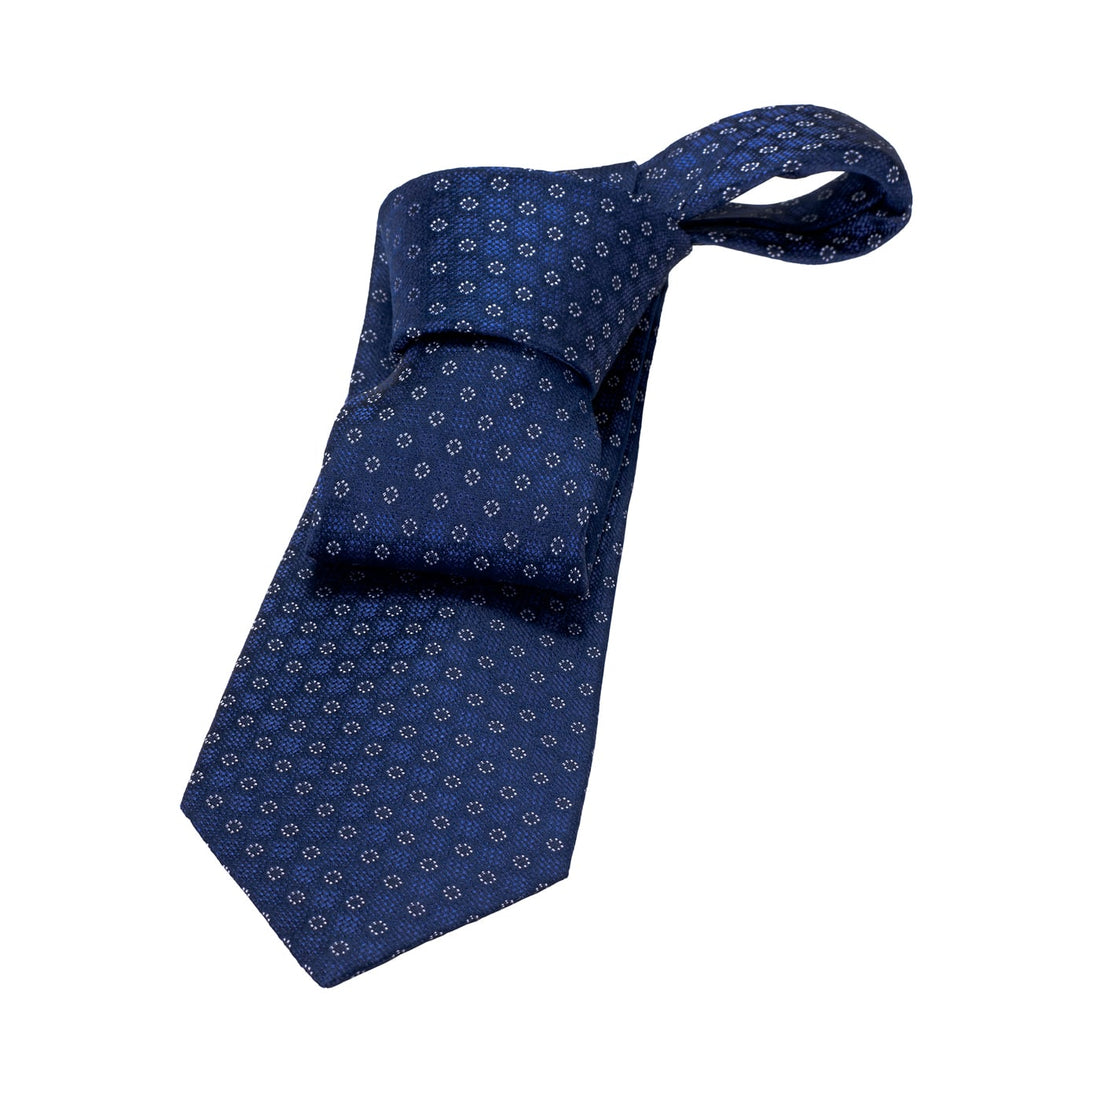 Midnight blue and amaranth silk tie